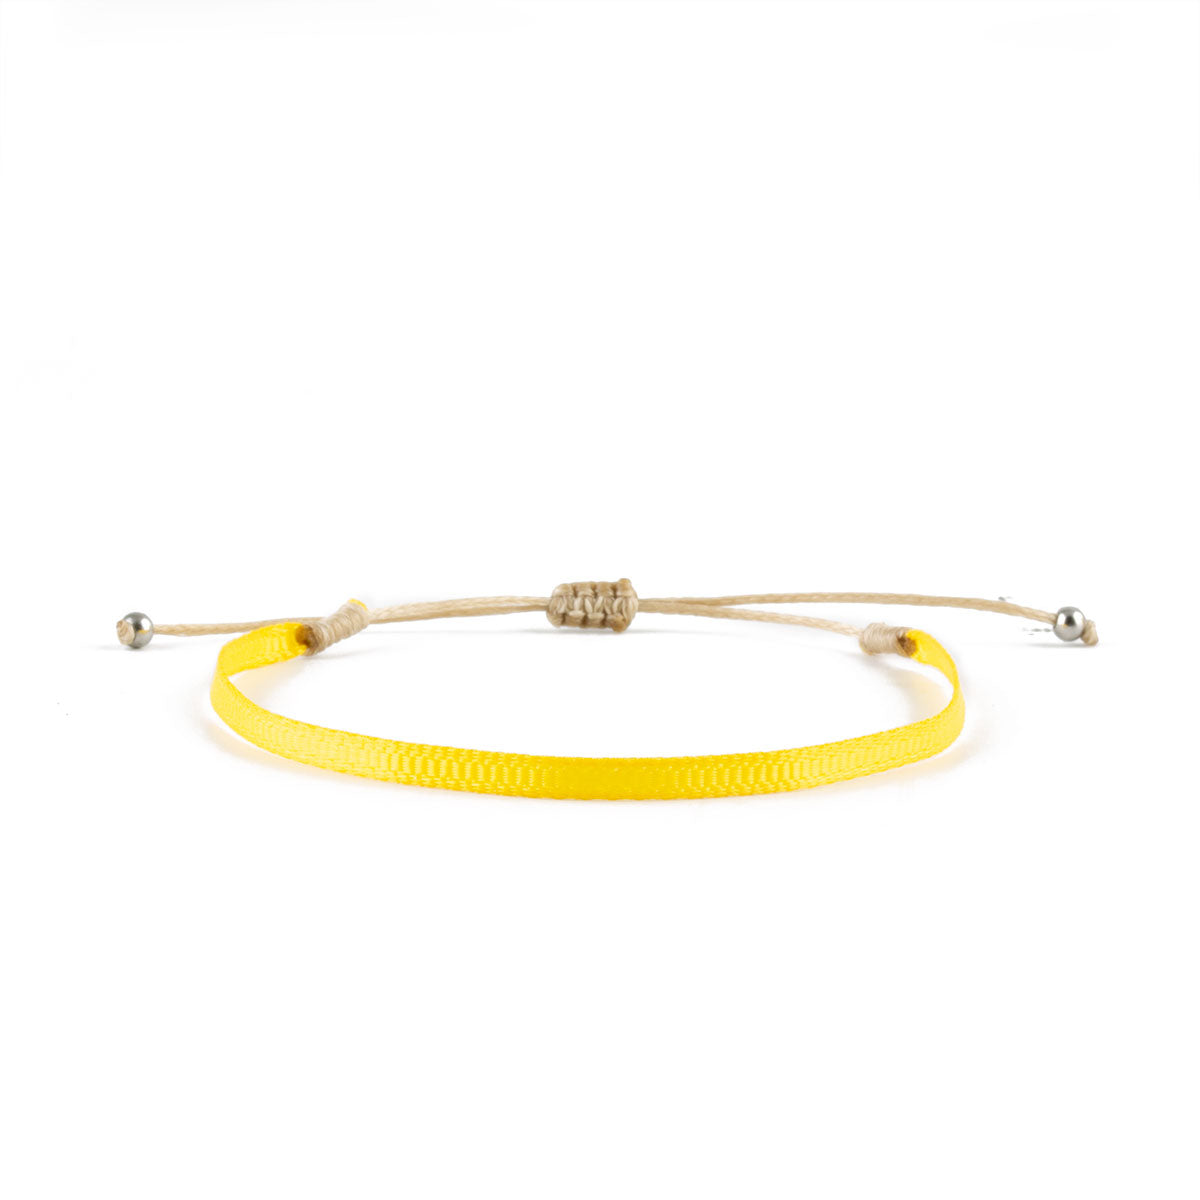 Bracelet ruban tissé jaune woven nylon strap yellow